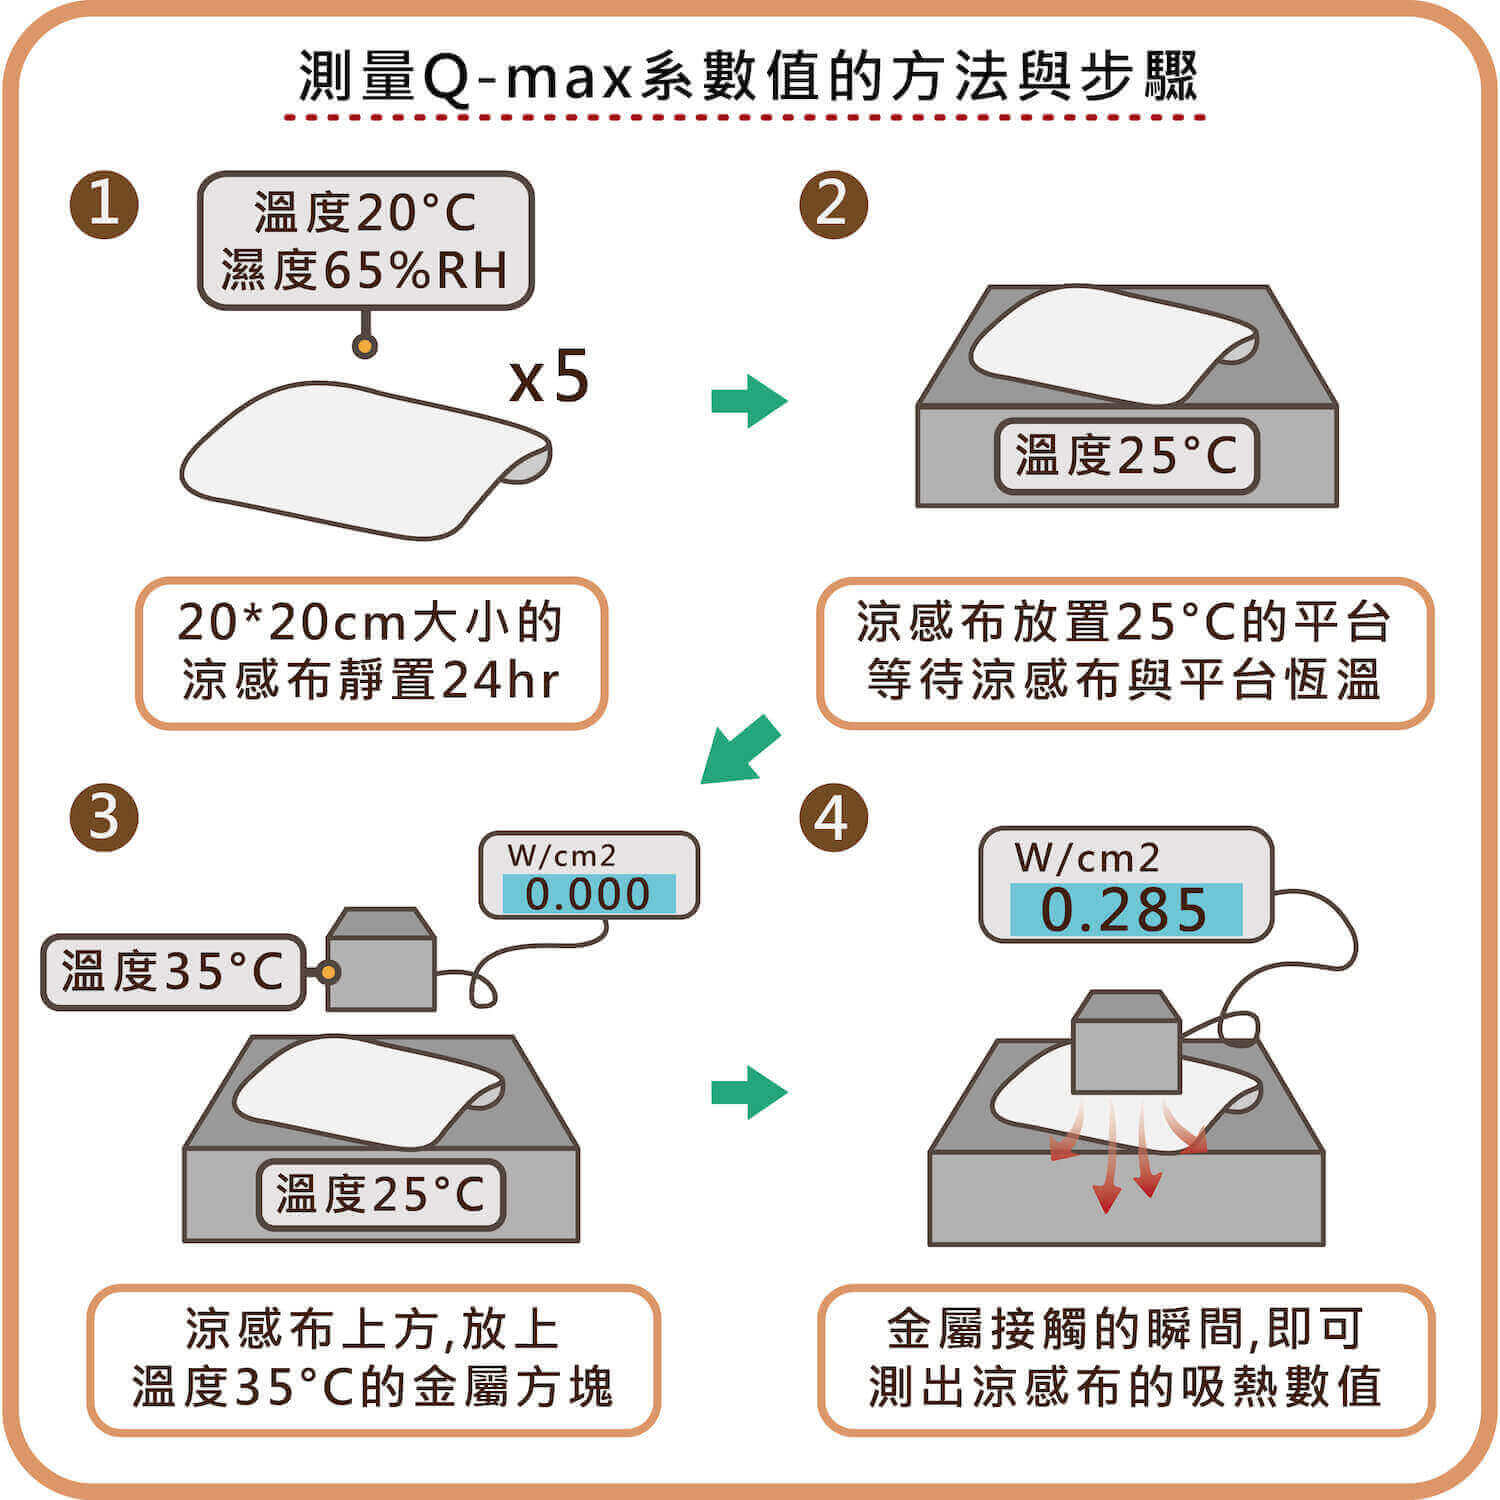 測量Qmax系數值的方法與步驟